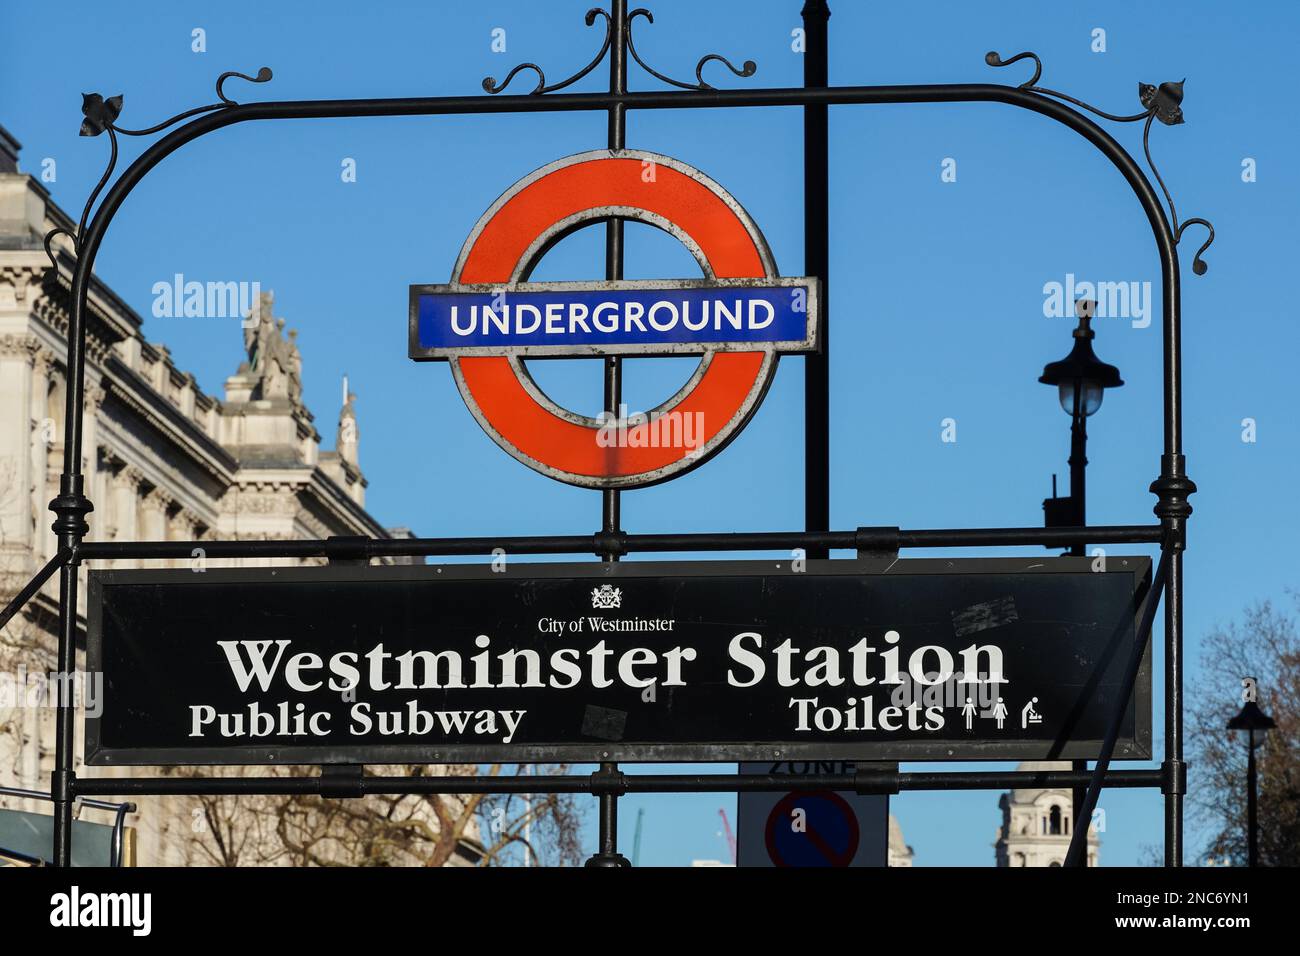 Entrée au métro de Westminster, station de métro, Londres Angleterre Royaume-Uni Banque D'Images